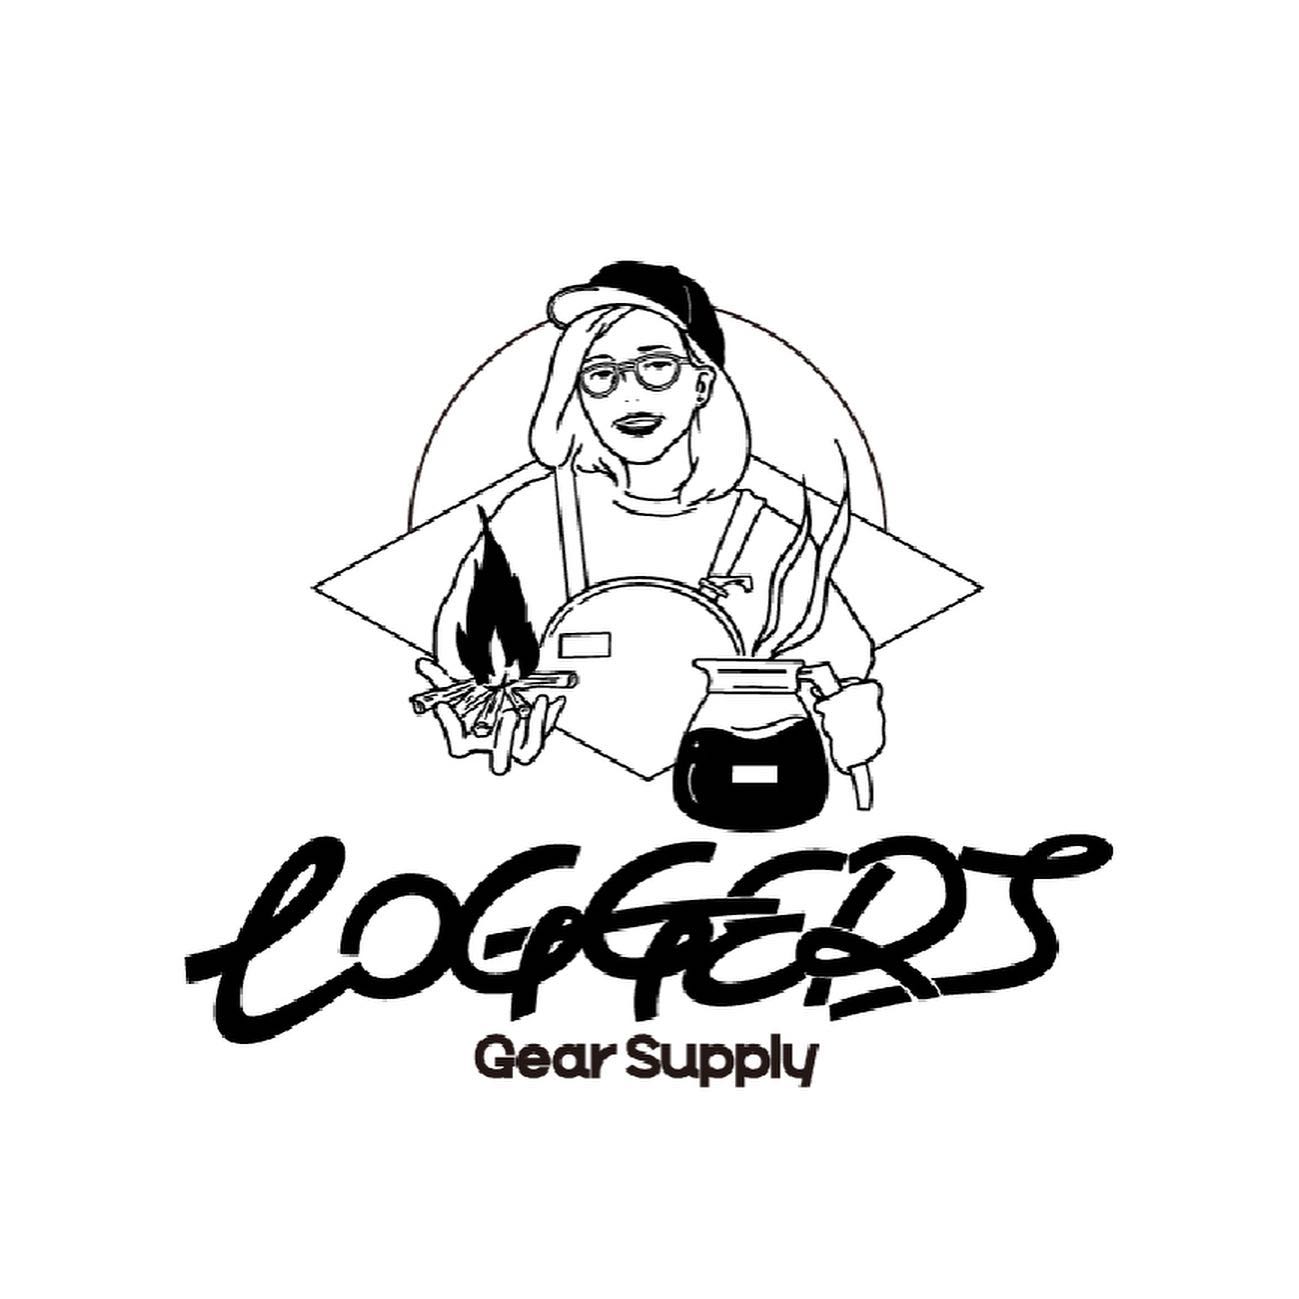 ・出店者紹介！•@loggers_gear_supply ・アウトドアギアのセレクトショップにコーヒースタンドを併設しています。林業を基盤にとしており、自社で薪の製造・販売もしています。今回は今後展開する予定のサウナスペースも出現。サウナ入って絶景を見ながら整い、お酒も(ほどほどに)お楽しみください！